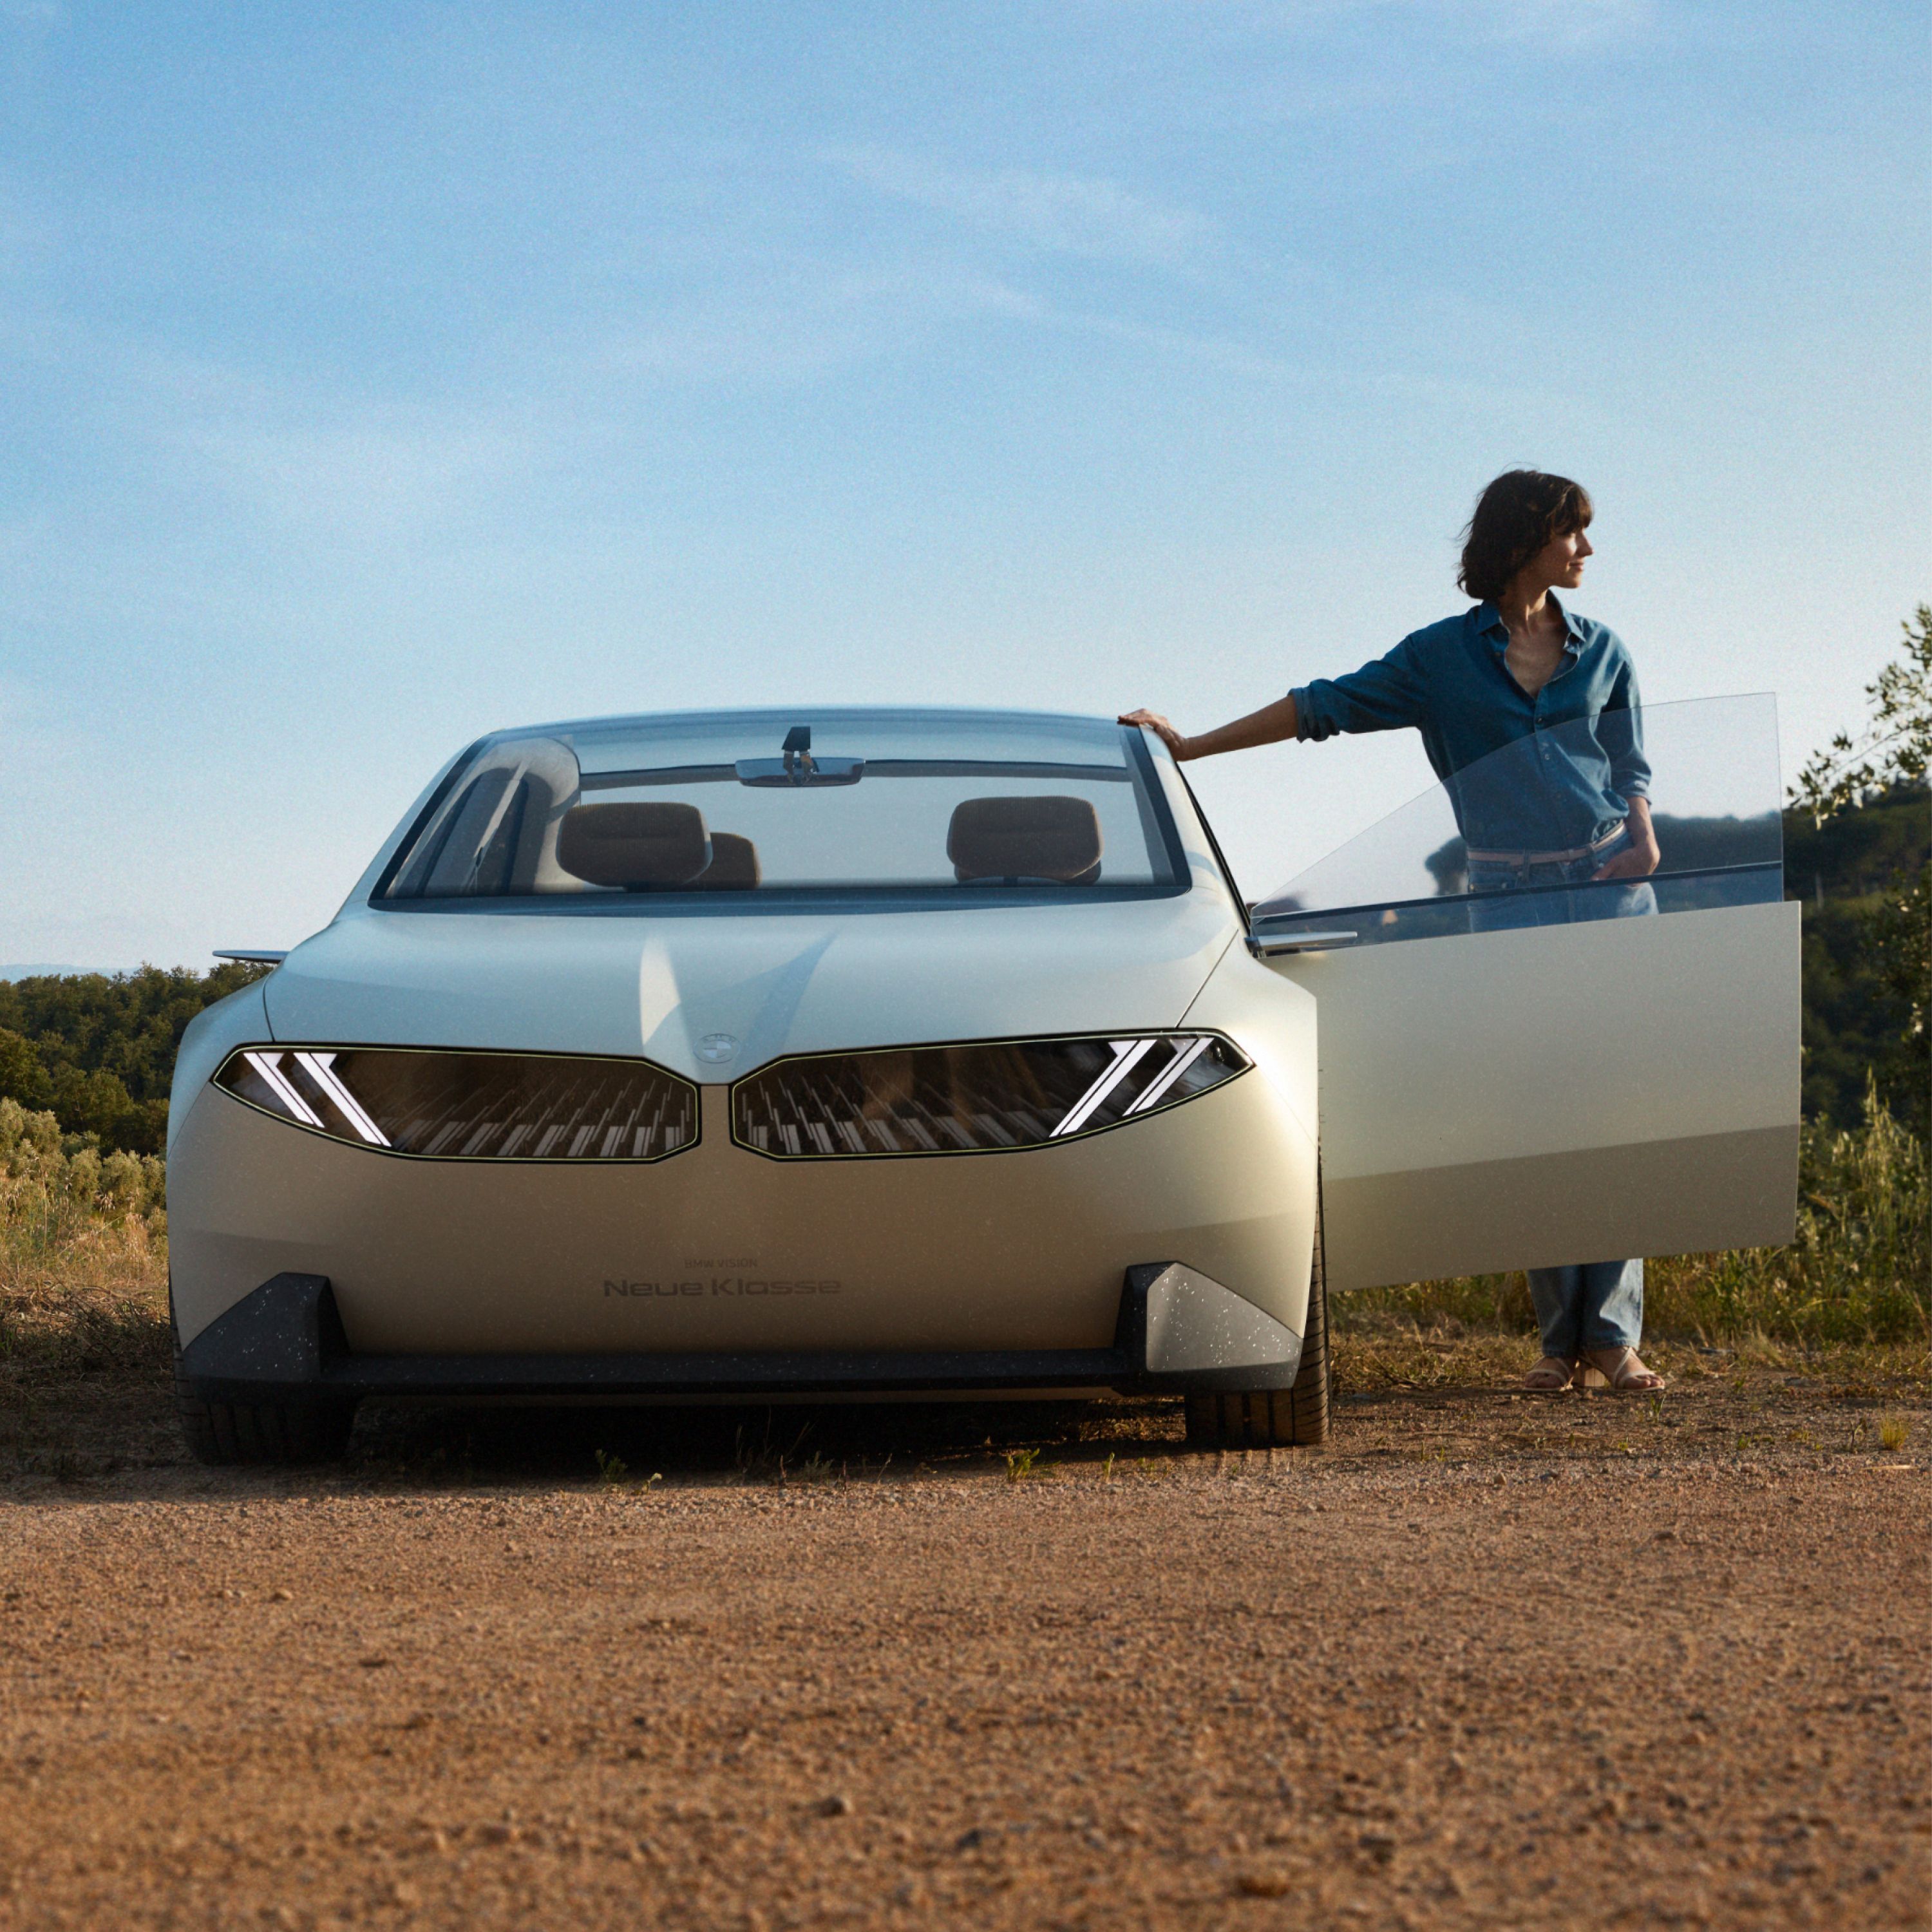 BMW Vision Neue Klasse konceptbil 2023, udvendigt udstyr, set forfra ved parkering i ørken, dør åben, med kvinde